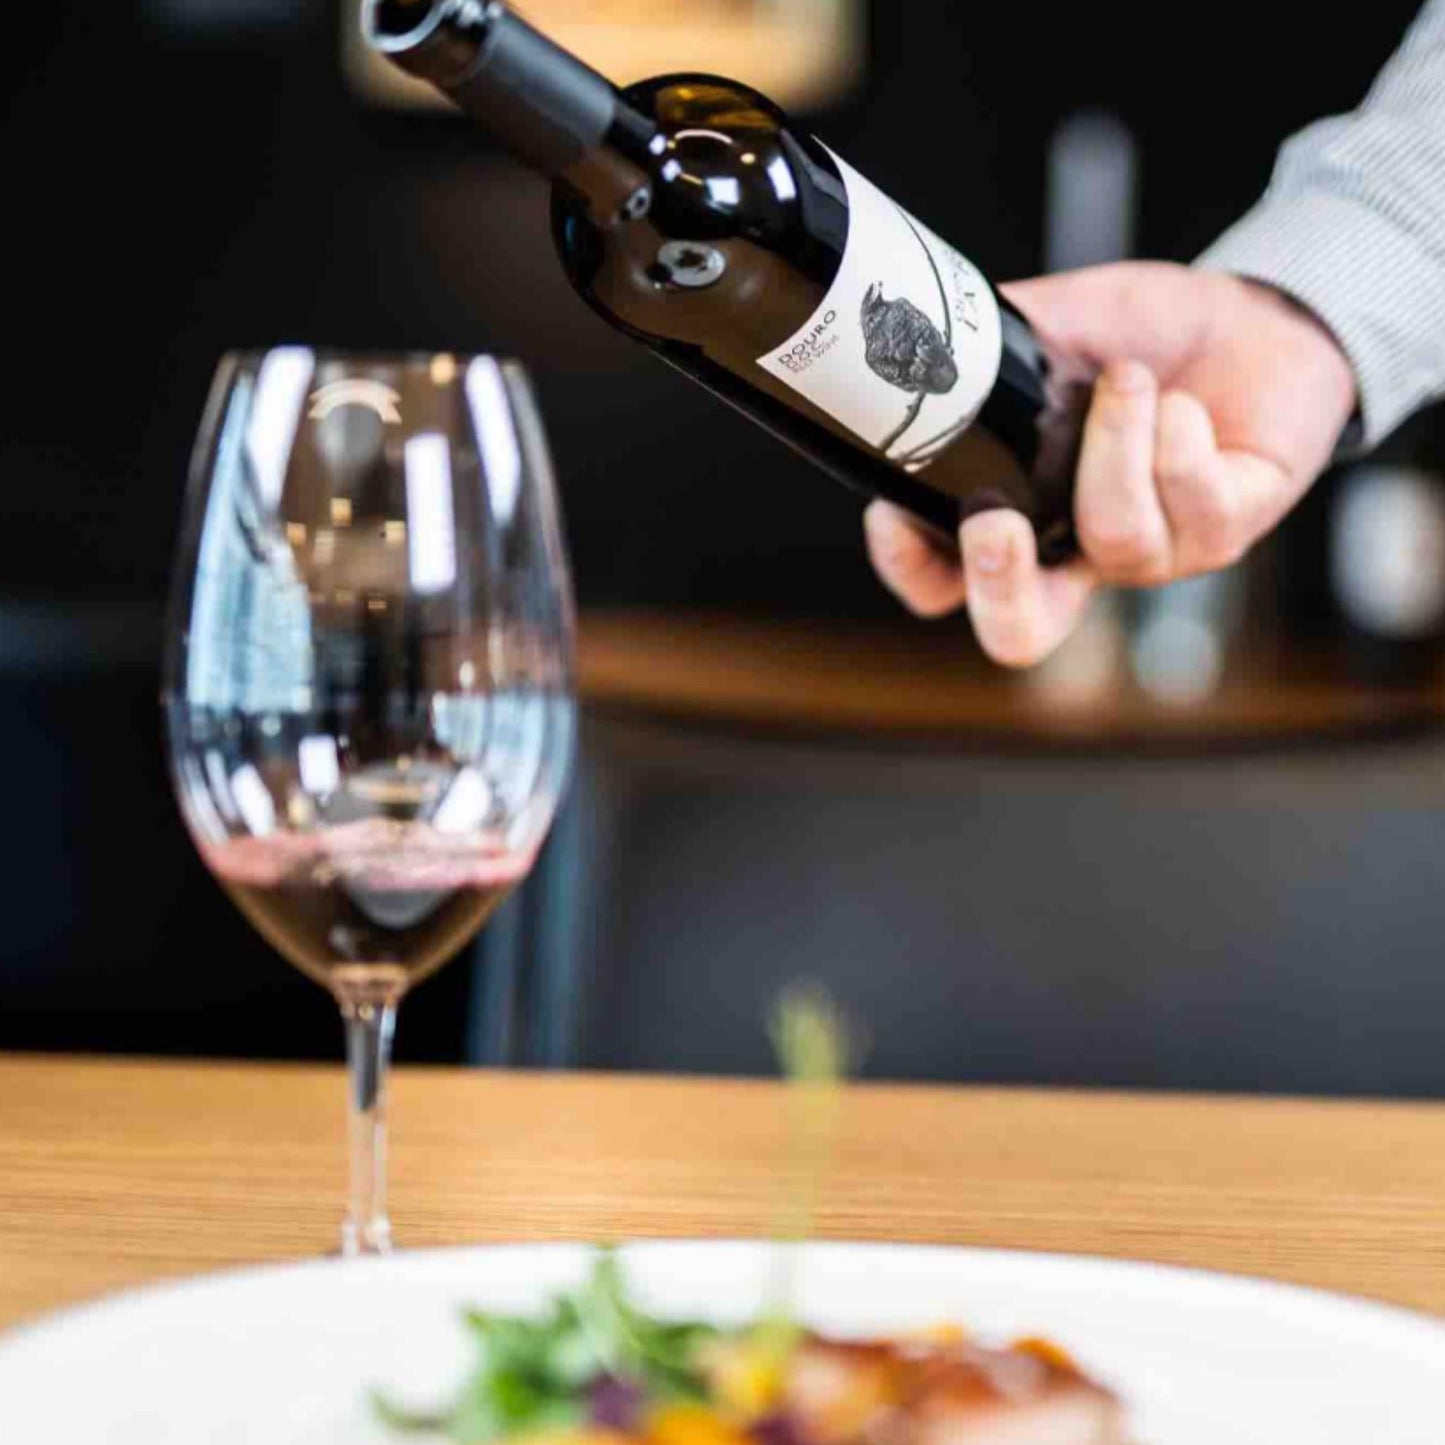 
                  
                    QUINTA DE LA ROSA ROTWEIN 2022 vom Weingut Quinta de la Rosa aus dem Douro/Portugal. Auf dem Bild ist ein Weinglas zu sehen, jemand schüttet Wein ein, davor steht ein Teller mit Essen.
                  
                